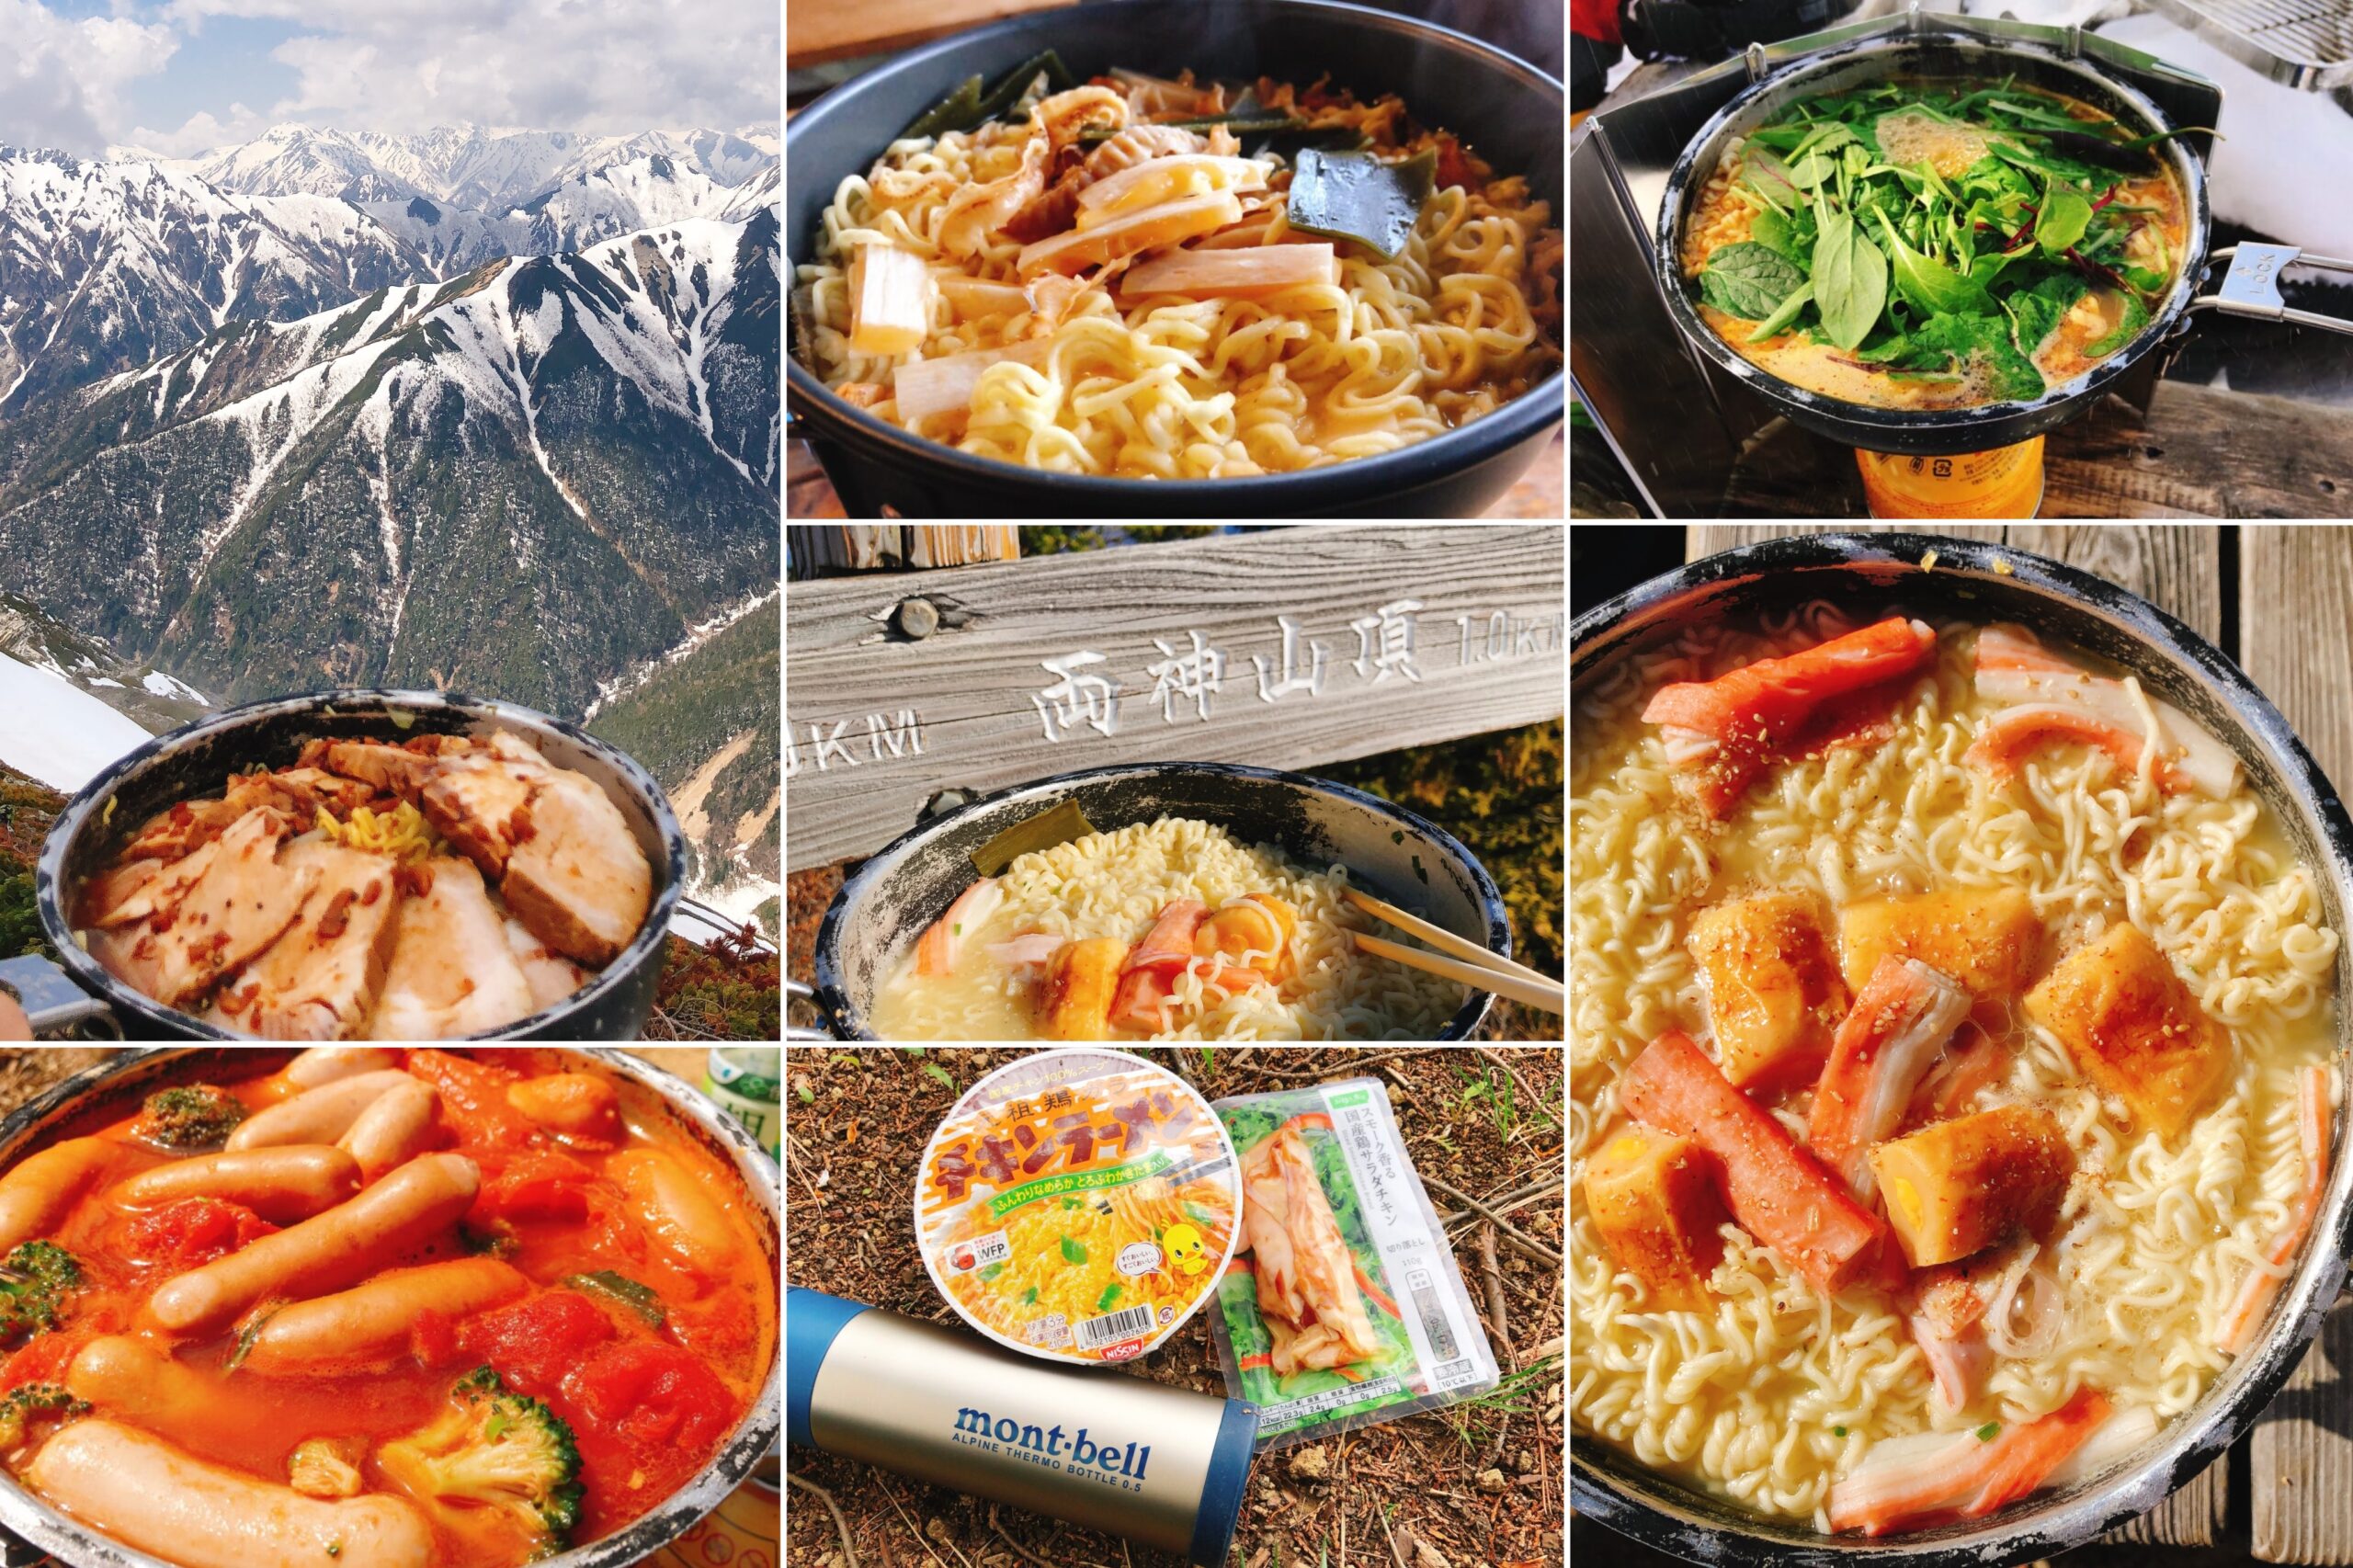 登山 キャンプ料理 初心者におすすめの山ラーメンレシピ11選 カップ麺 袋麺 棒ラーメンあり 山ごはん屋 山メシのレシピ 登山情報ブログ